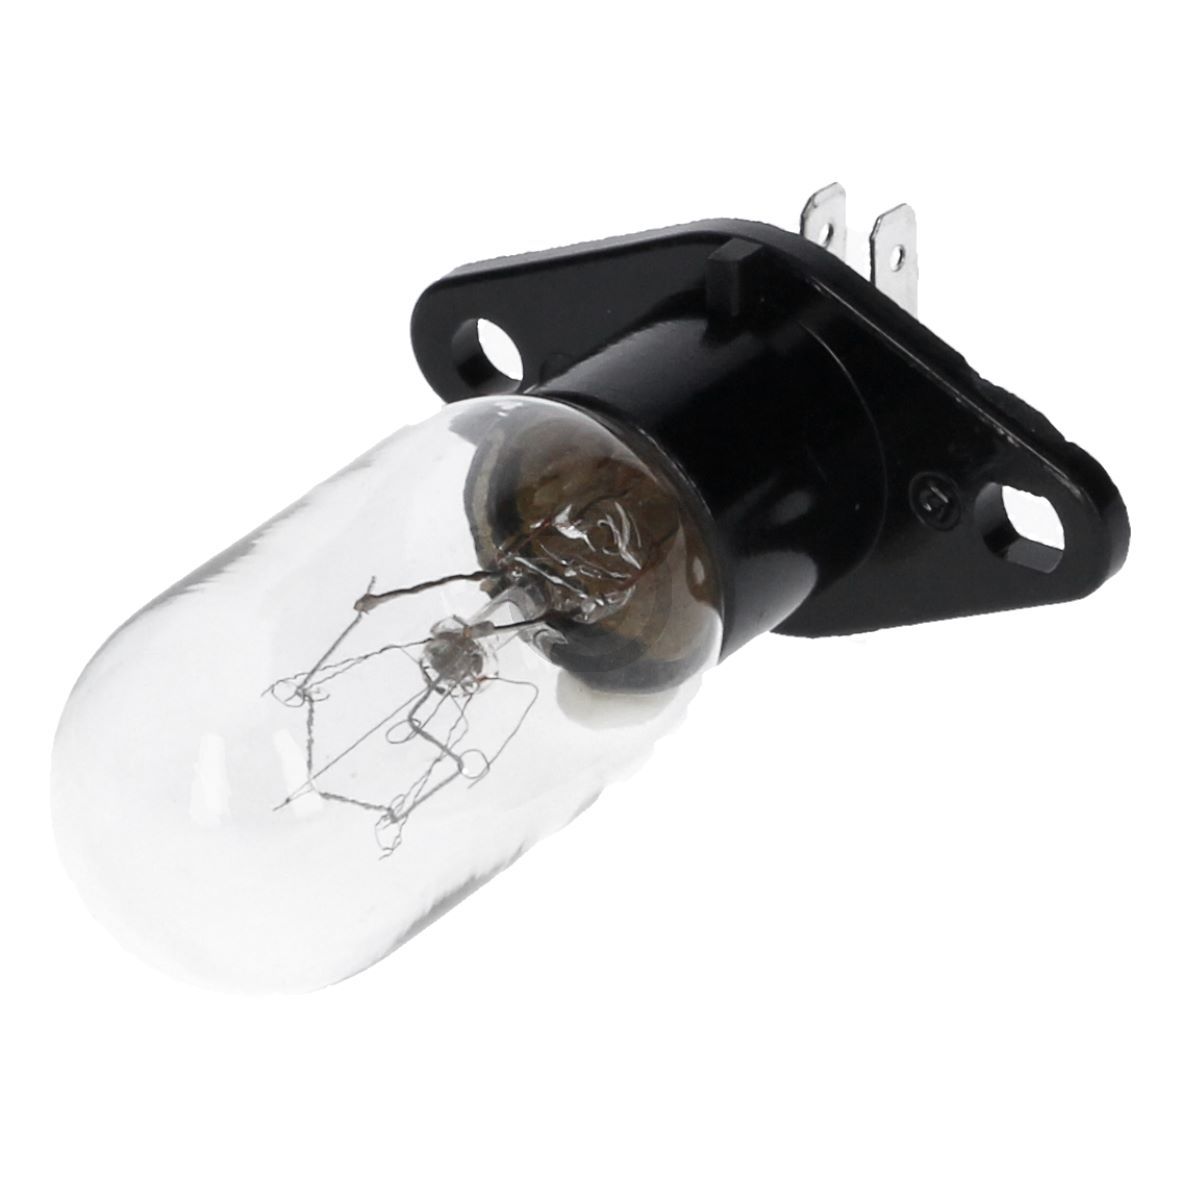 Lampe wie BOSCH 00606322 25W 240V mit Befestigungssockel 2x4,8mmAMP für Mikrowelle